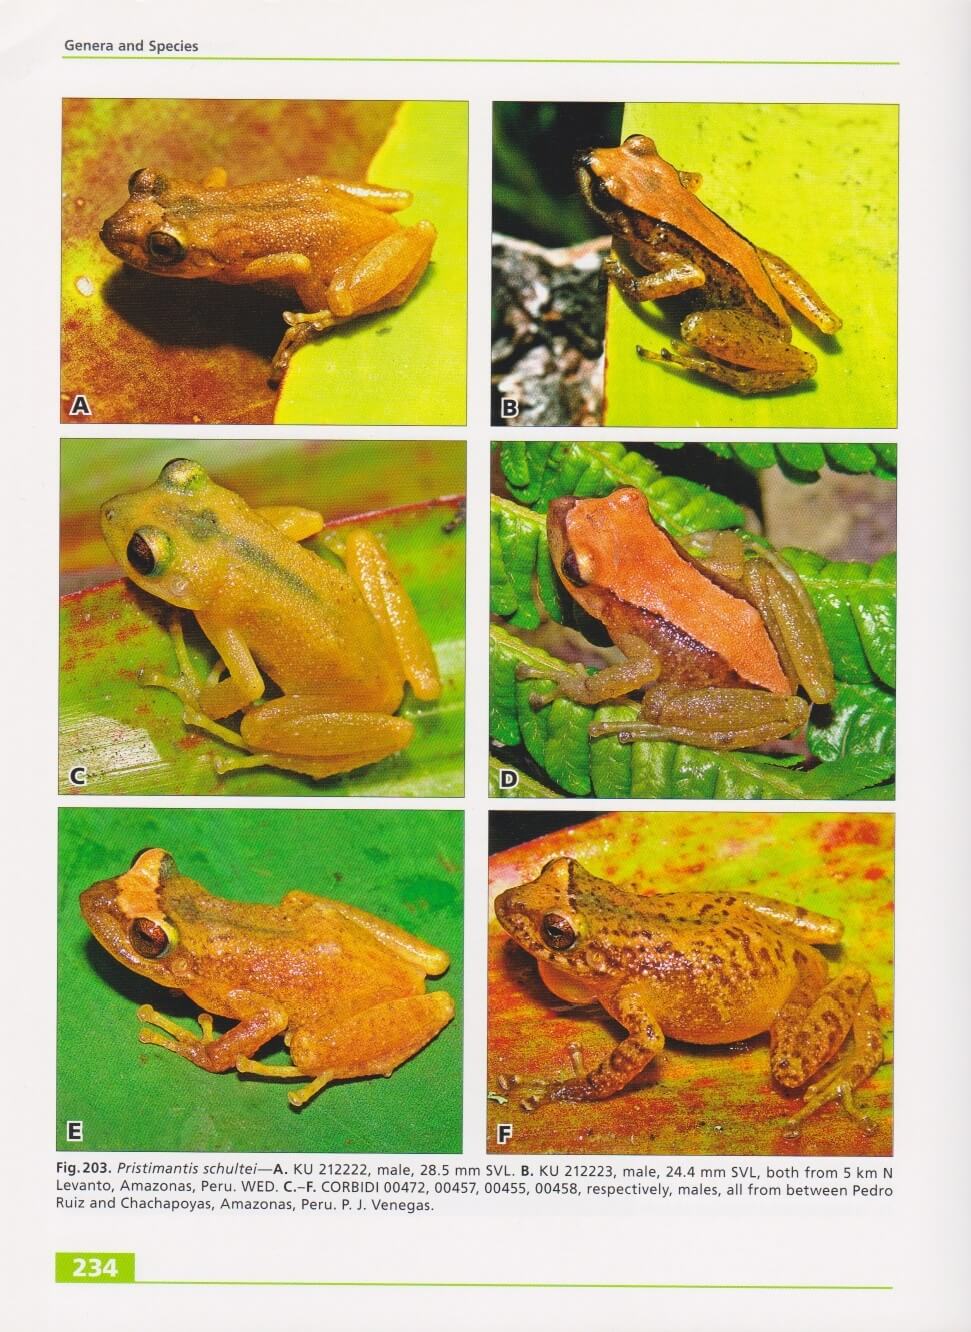 terrestrial-breeding_frogs_9783866590984_seite_234